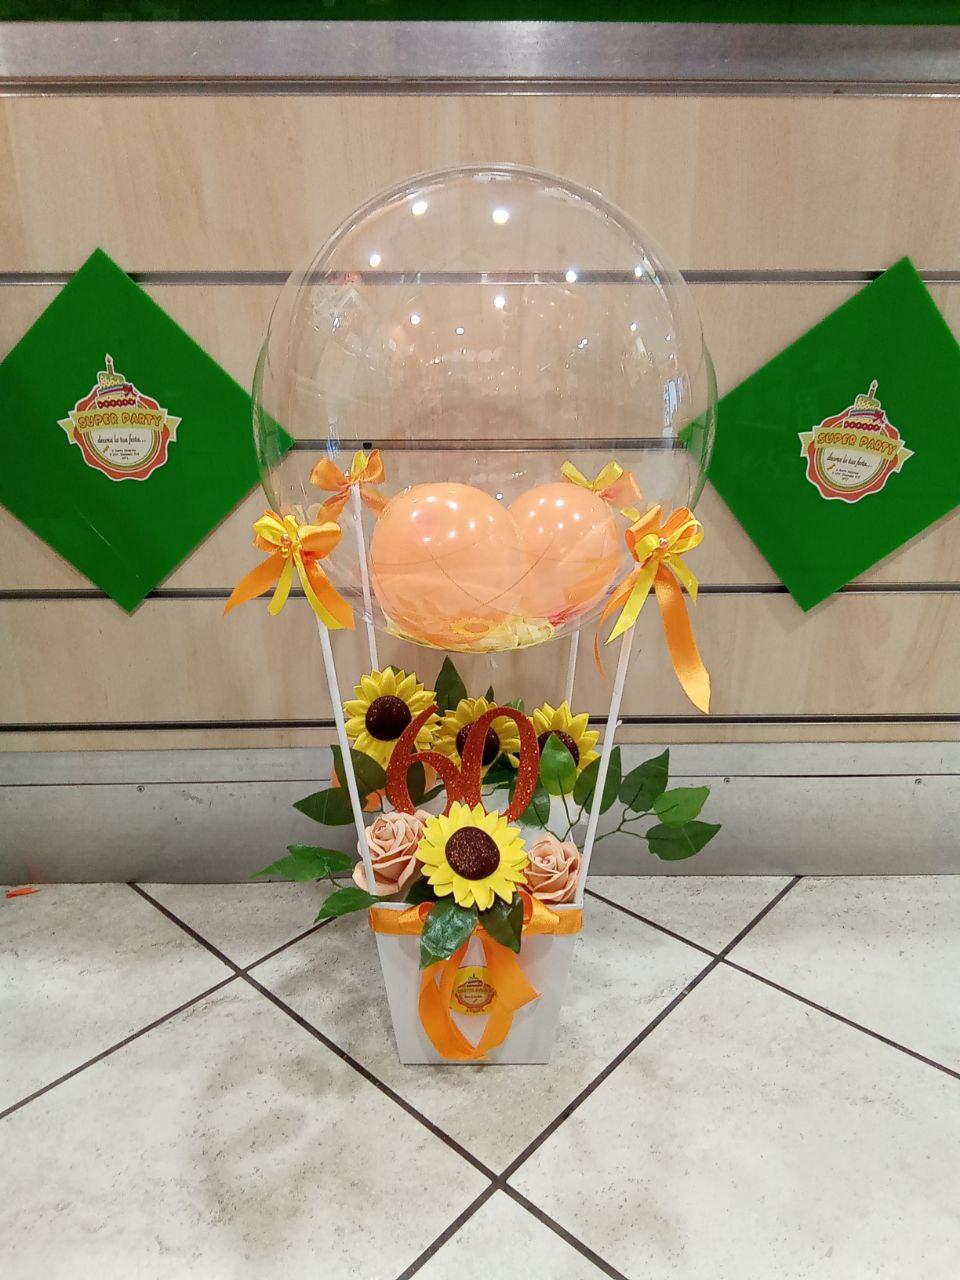 mongolfiera con fiori realizzati artigianalmente gialla arancio